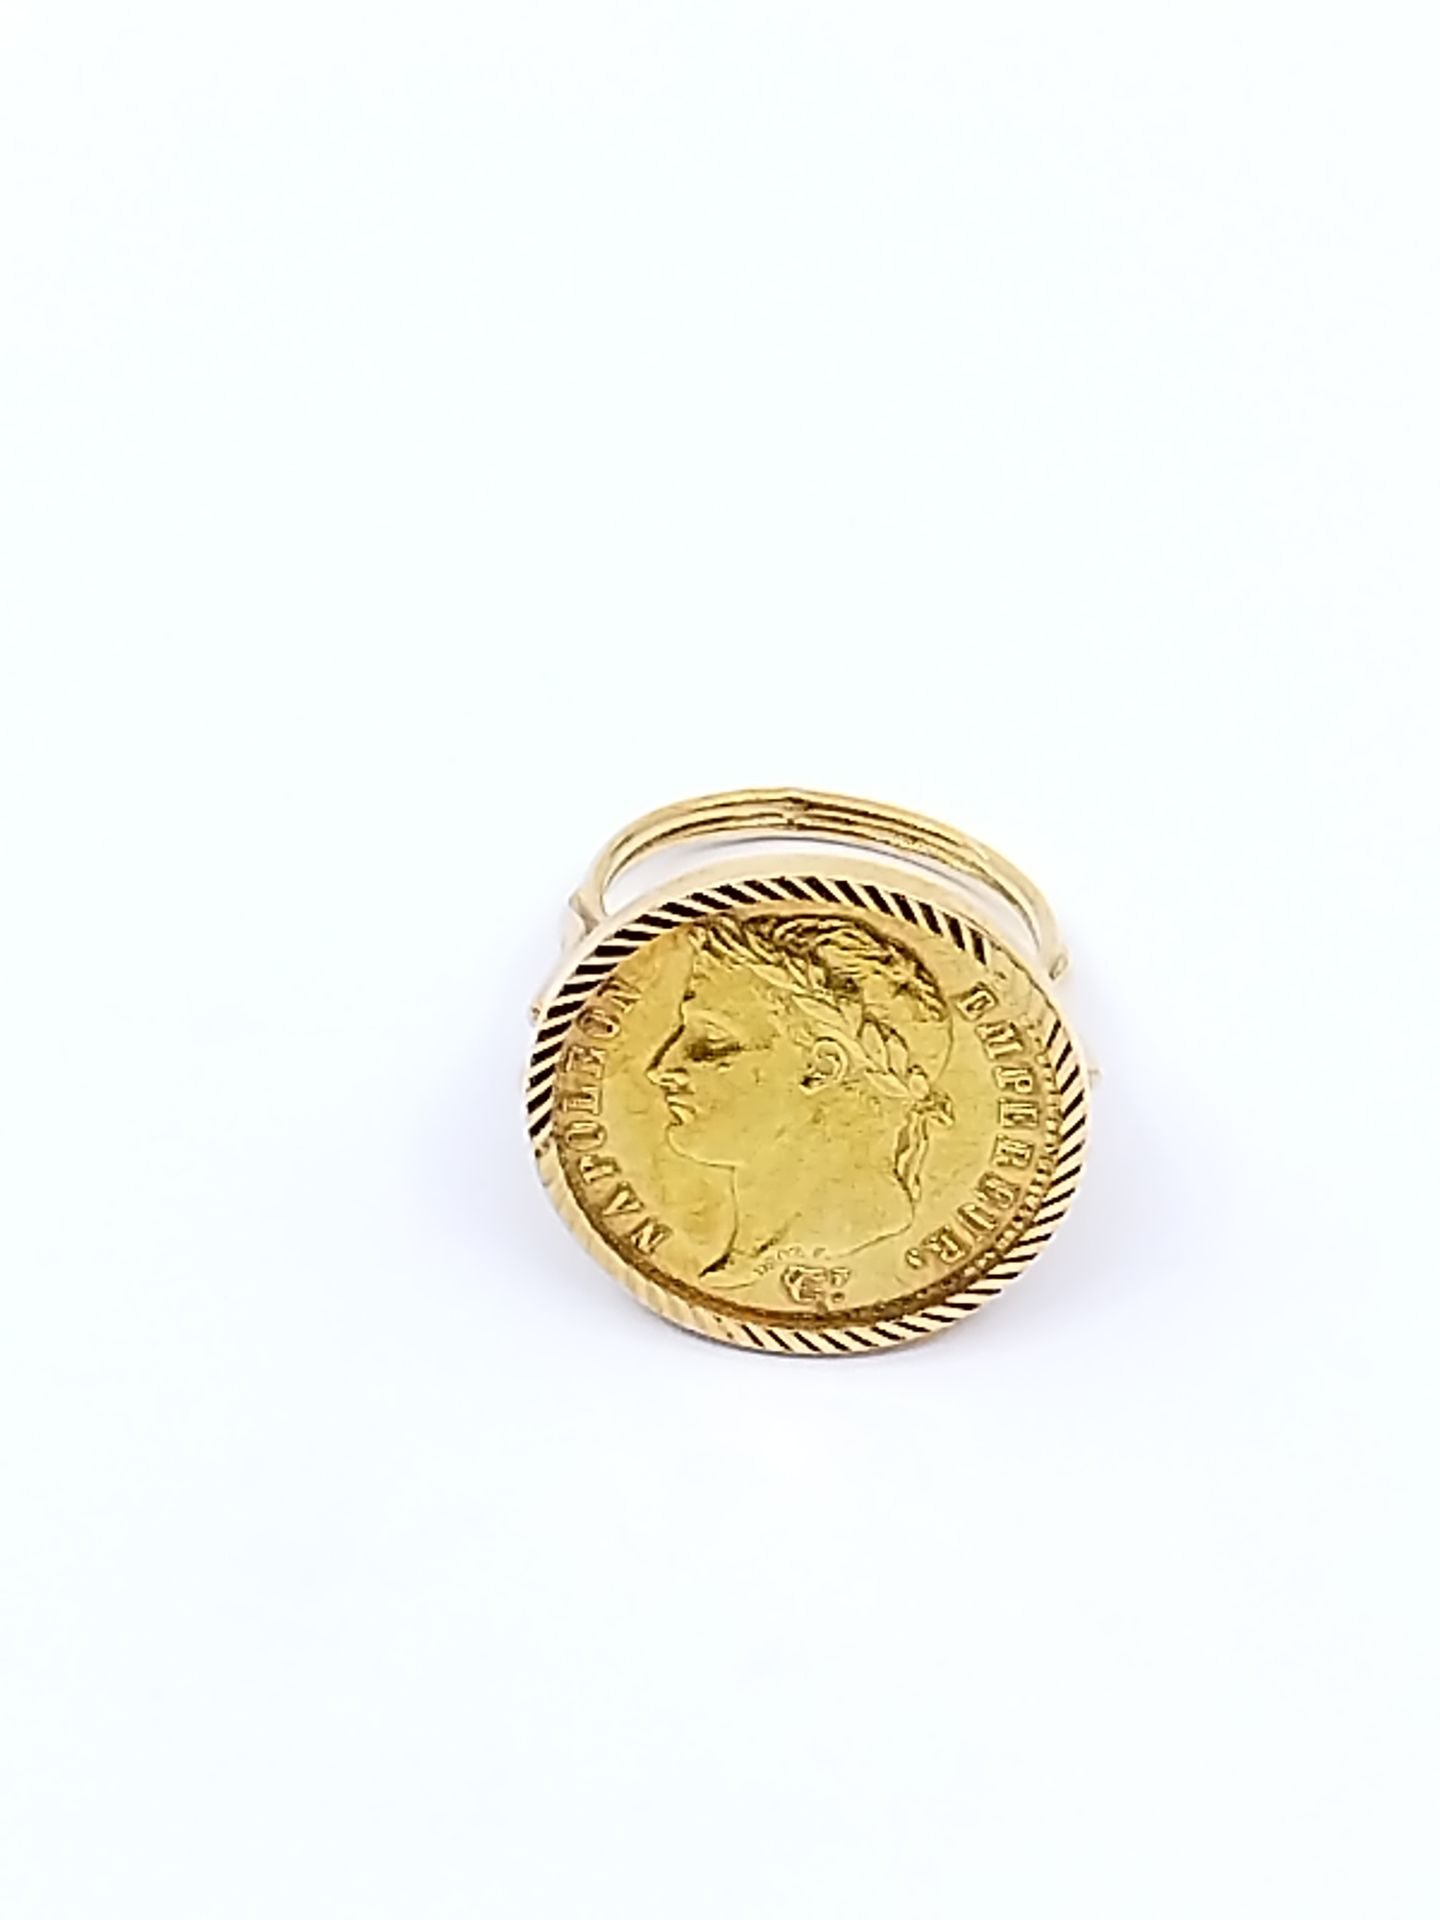 Null 750°黄金戒指，饰以20法郎拿破仑金币

重量 : 12,09 g

TDD 54